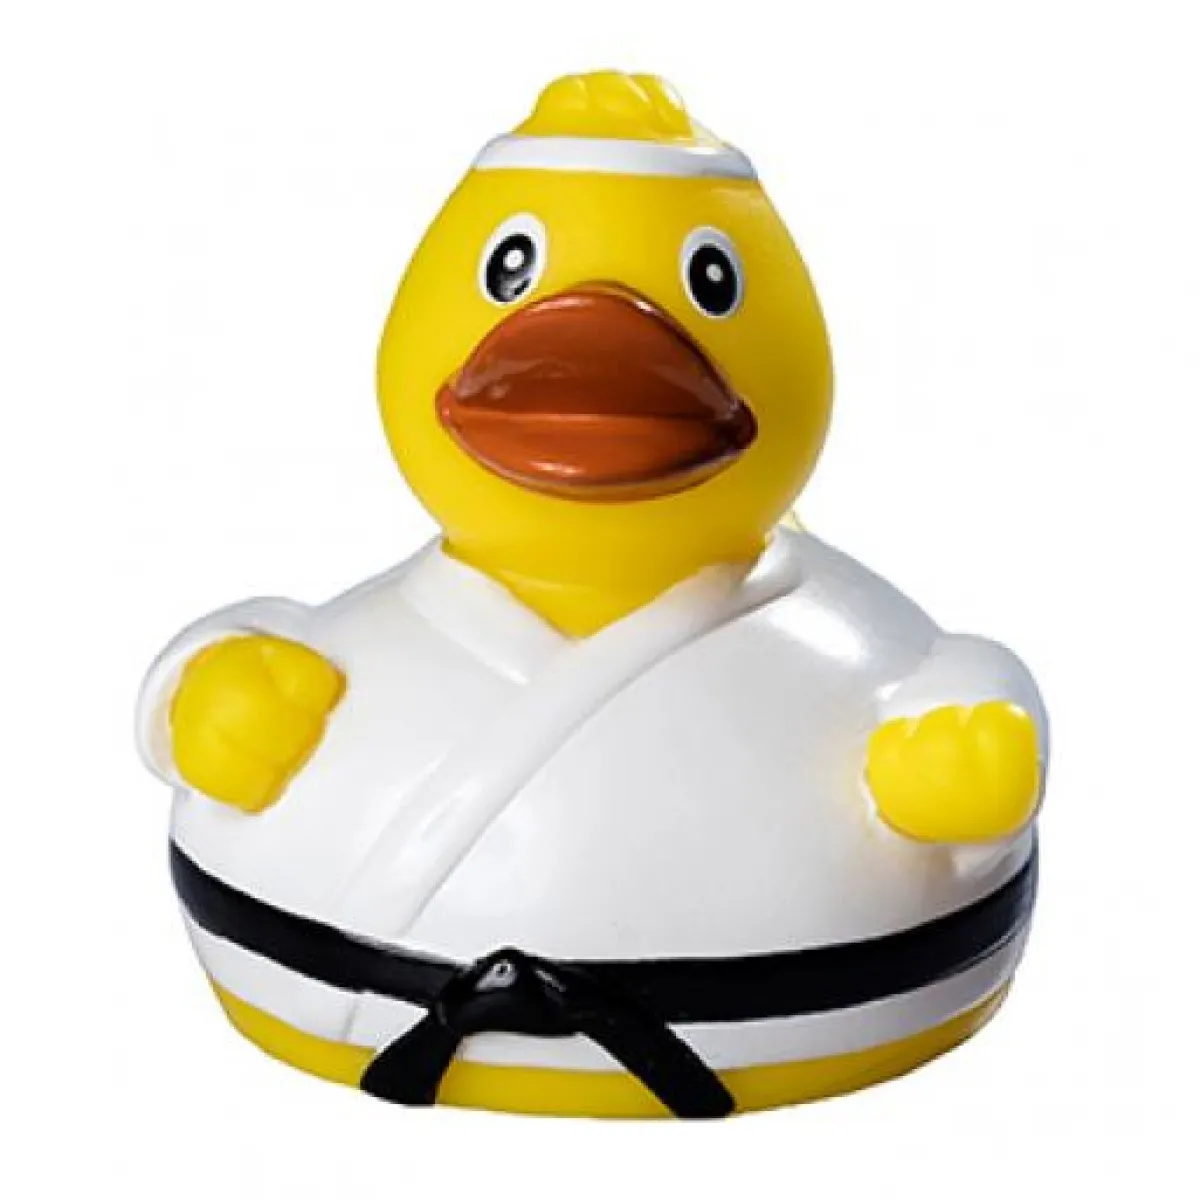 Bath duck - squeaky duck martial arts